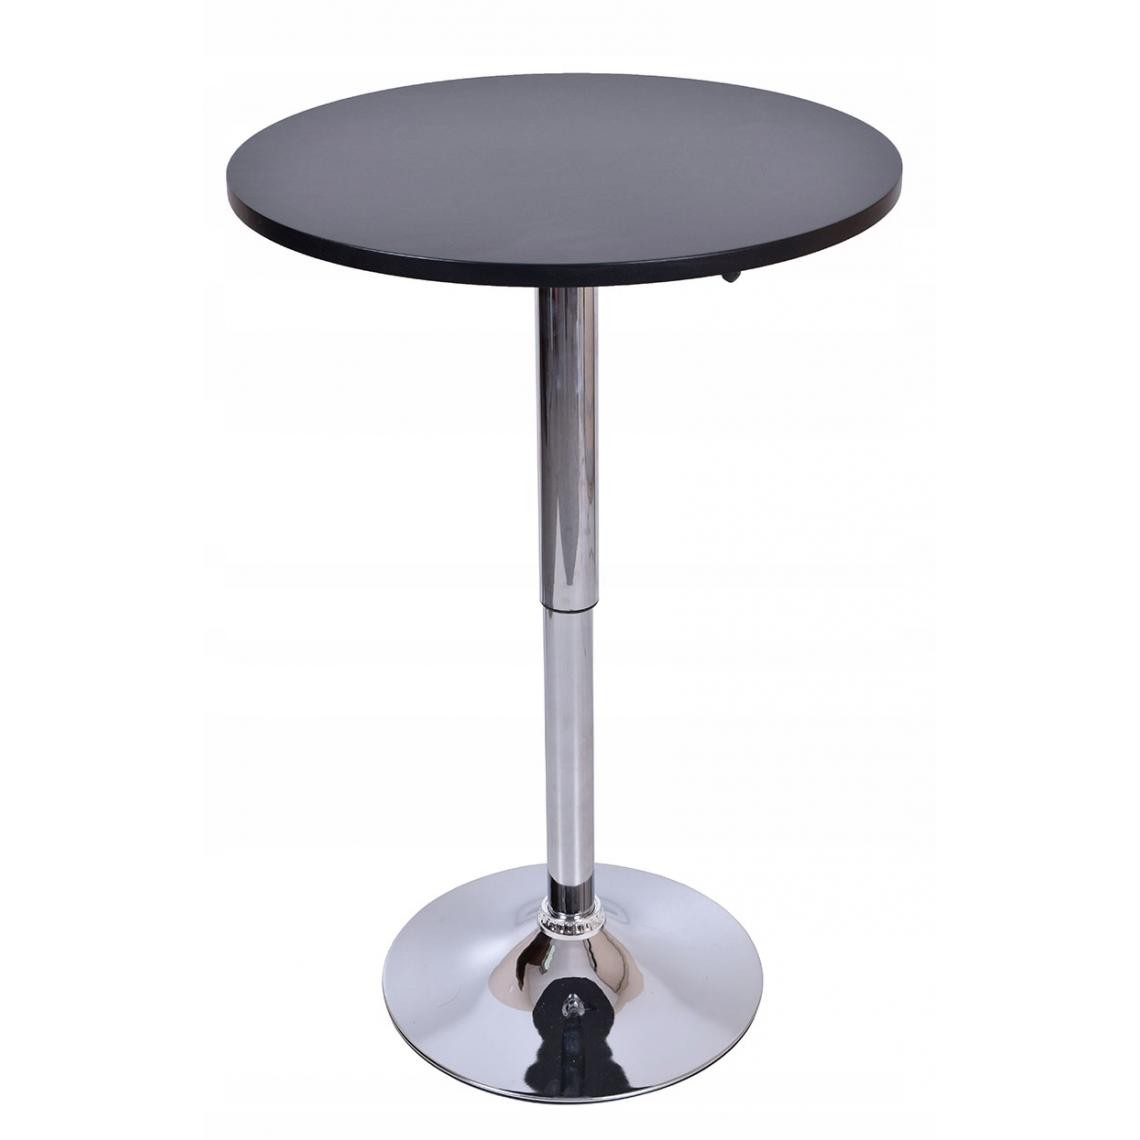 Hucoco - SAMBA - Table haute bar/cuisine moderne en MDF + pied chromé hauteur réglable - Table rond Mange debout bistro cafétéria - Noir - Tables à manger